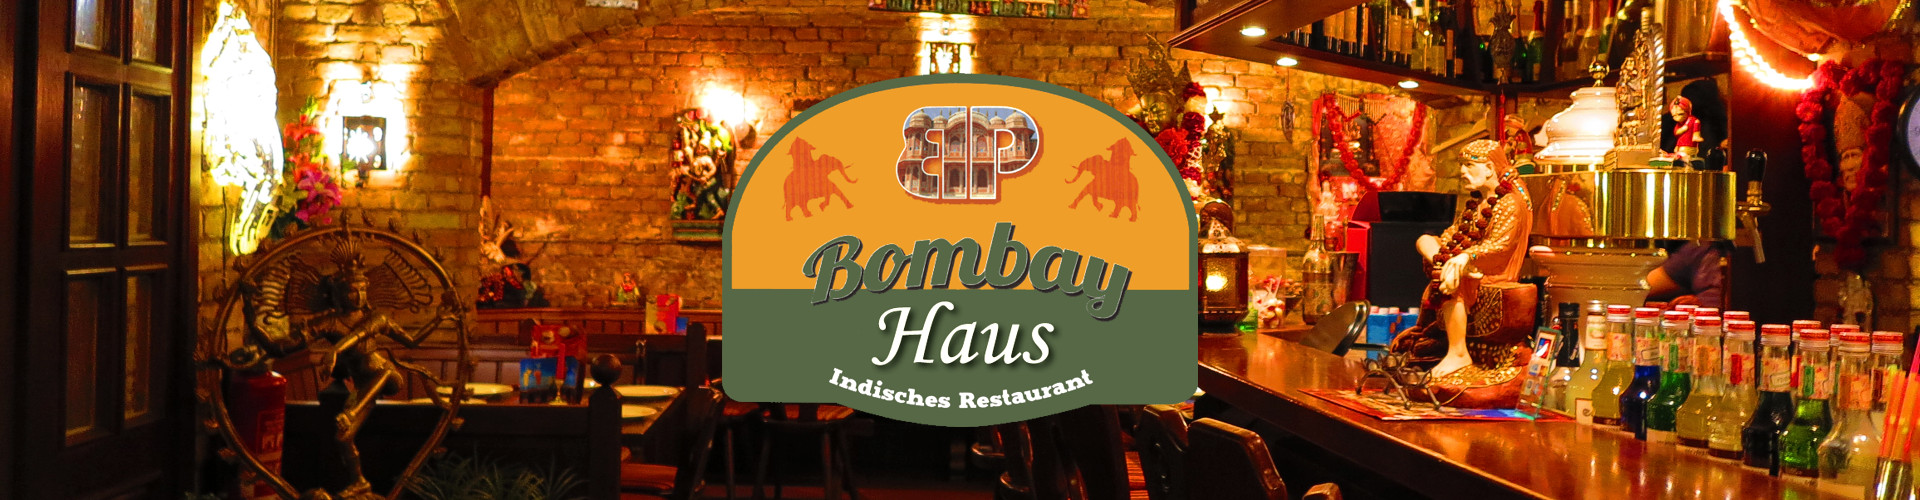 Bombay Palace - das indische Restaurant in Rostock